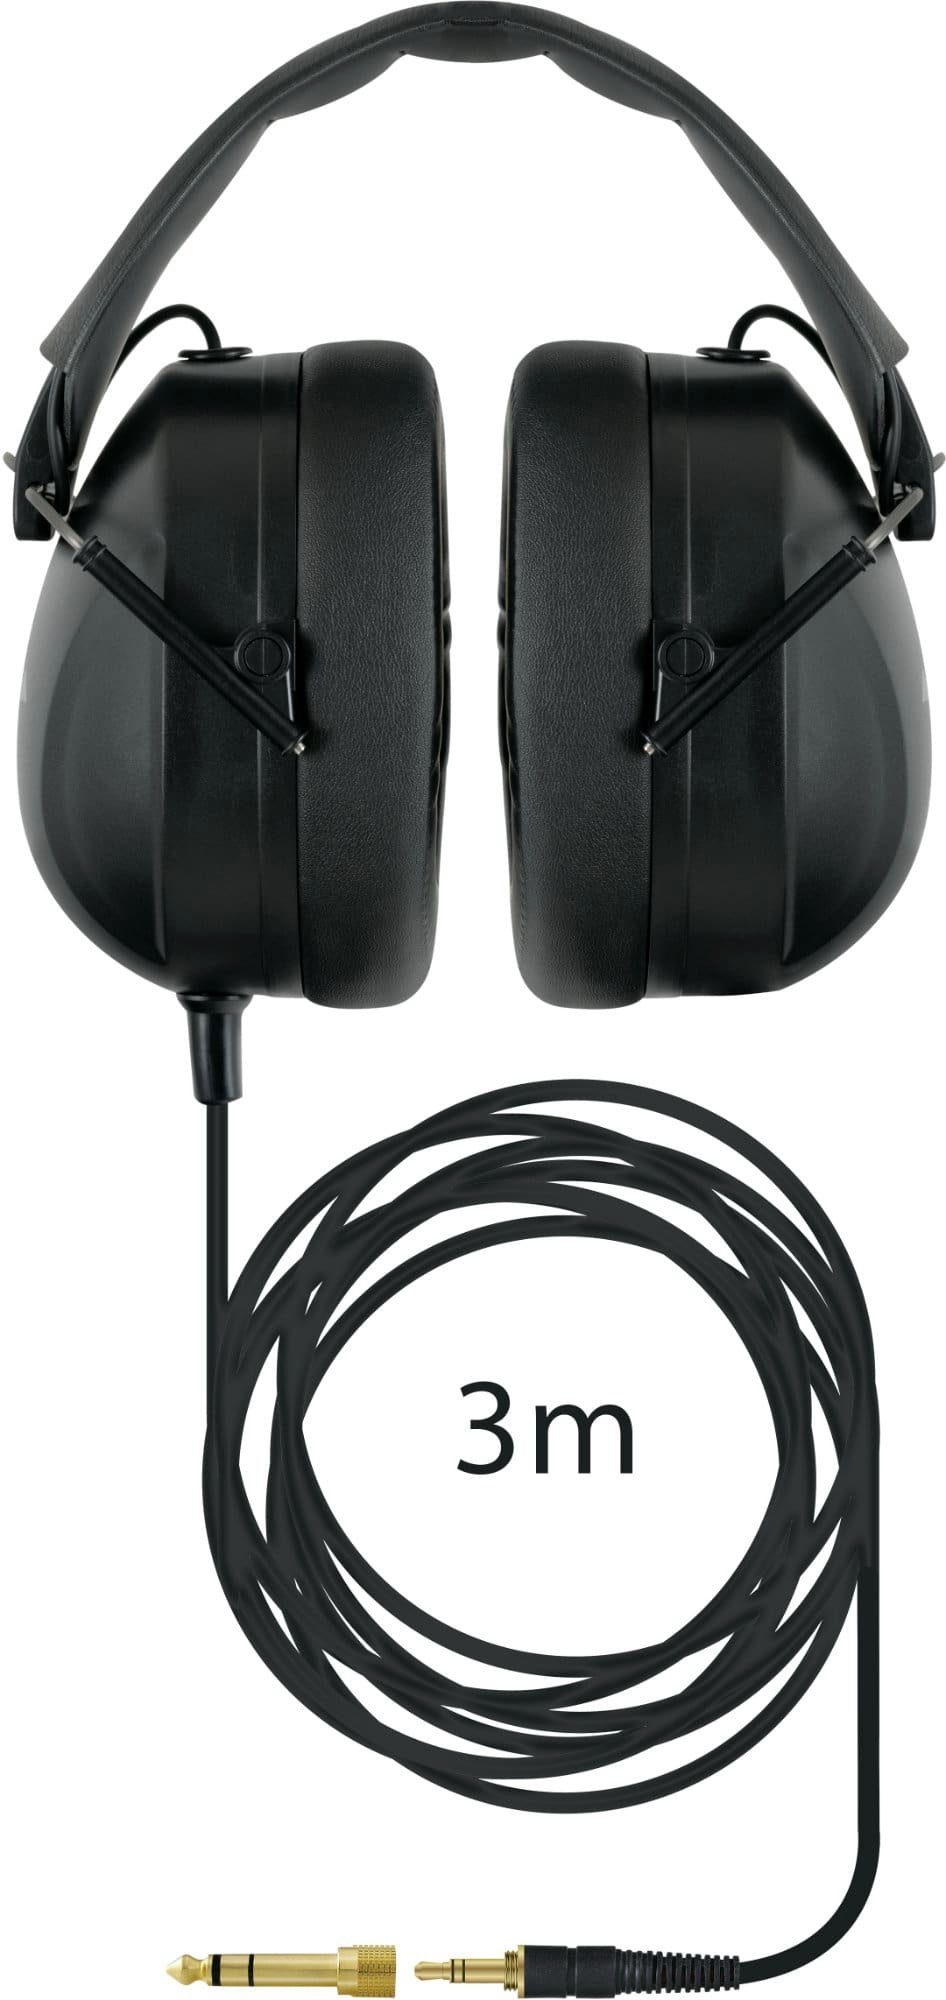 XDrum HD-995 HiFi-Kopfhörer 22 (gesamtlärmpegelreduzierung Schalldämpfung ca. dB) um mit Kopfhörer